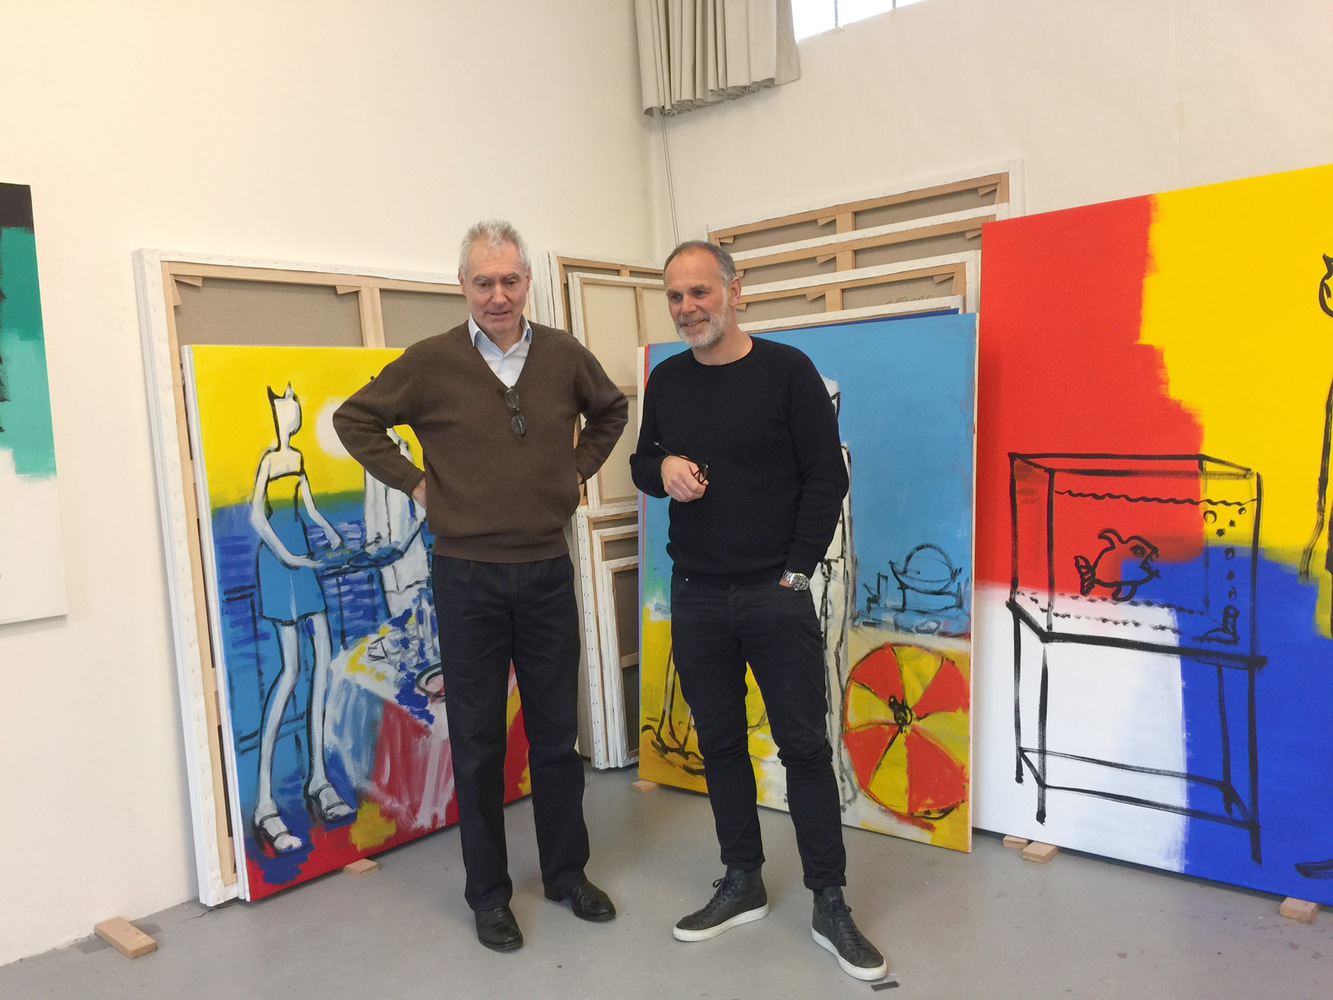 Alain SECHAS - Trottinette, 2018 -  Réunion de travail avec Alain Séchas et Jérôme Arcay dans l'atelier de l'artiste à Paris, le 27 février 2017